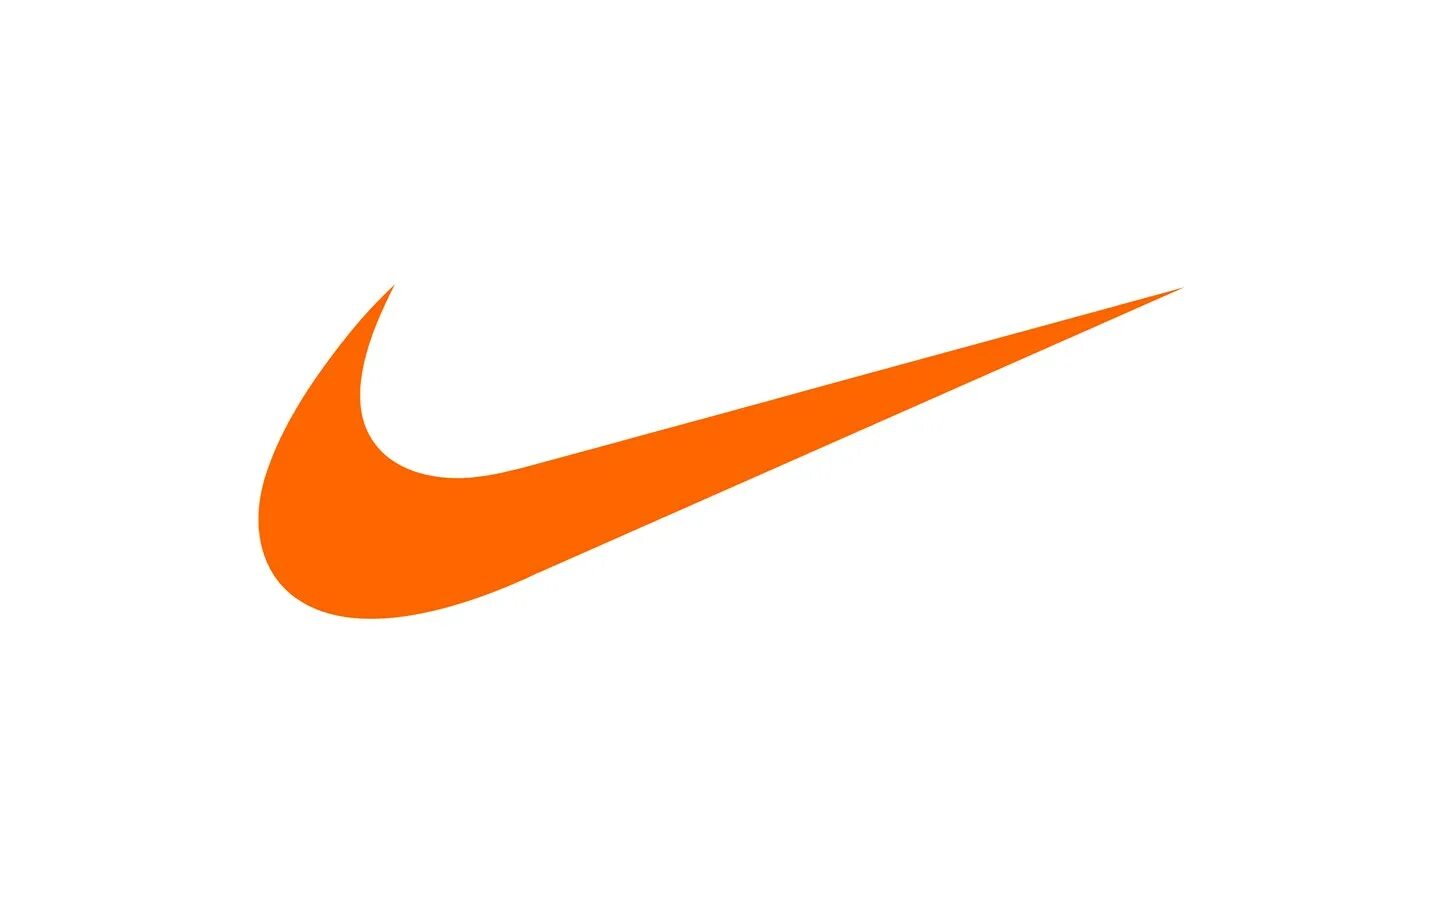 Nike logo 512x. Белый свуш найк. Nike 512x512. Nike Swoosh логотип.